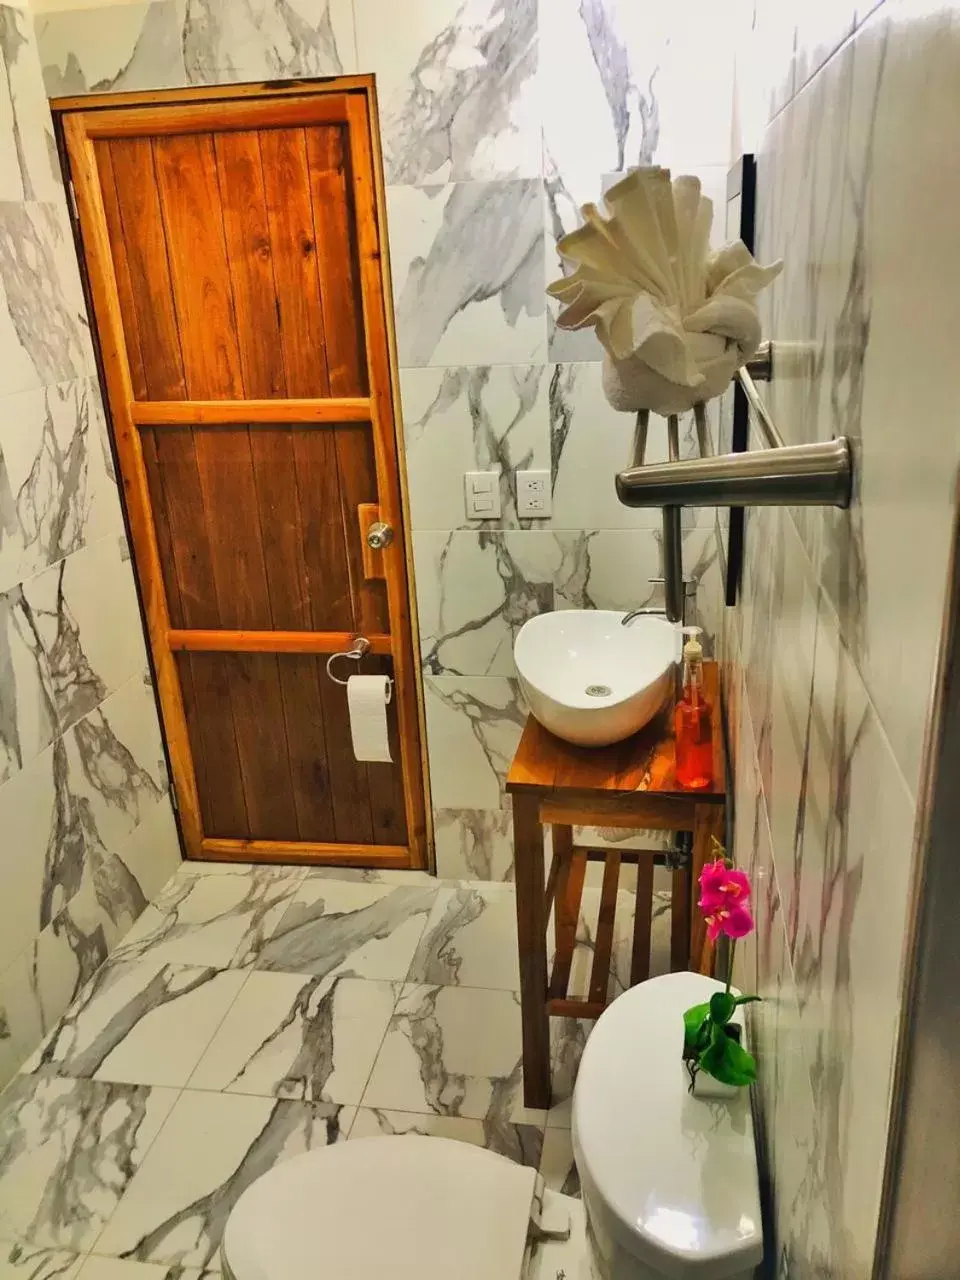 Bathroom in Los Arcos Hotel - TULUM